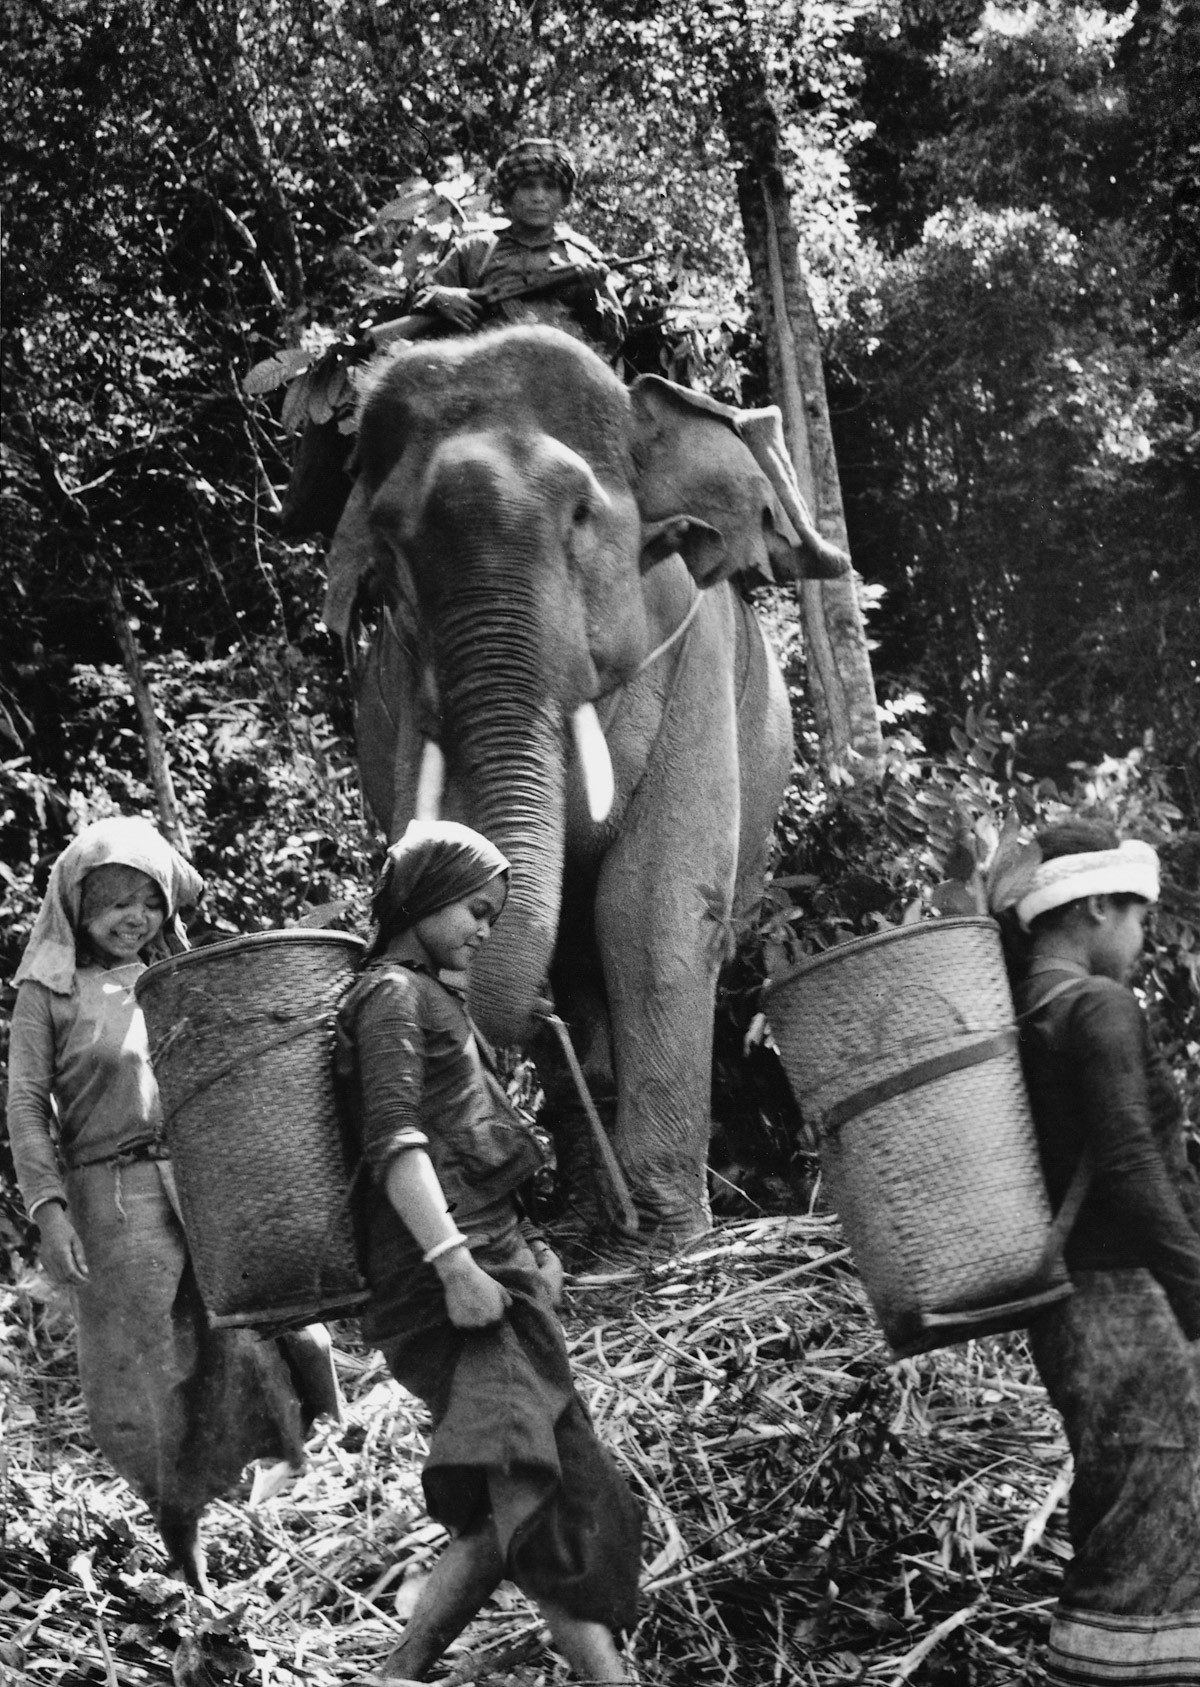 1971 - Guerrilheiros de Laos, país vizinho ao Vietnã, transportavamm alimentos e armas em elefantes (Foto: Divulgação)